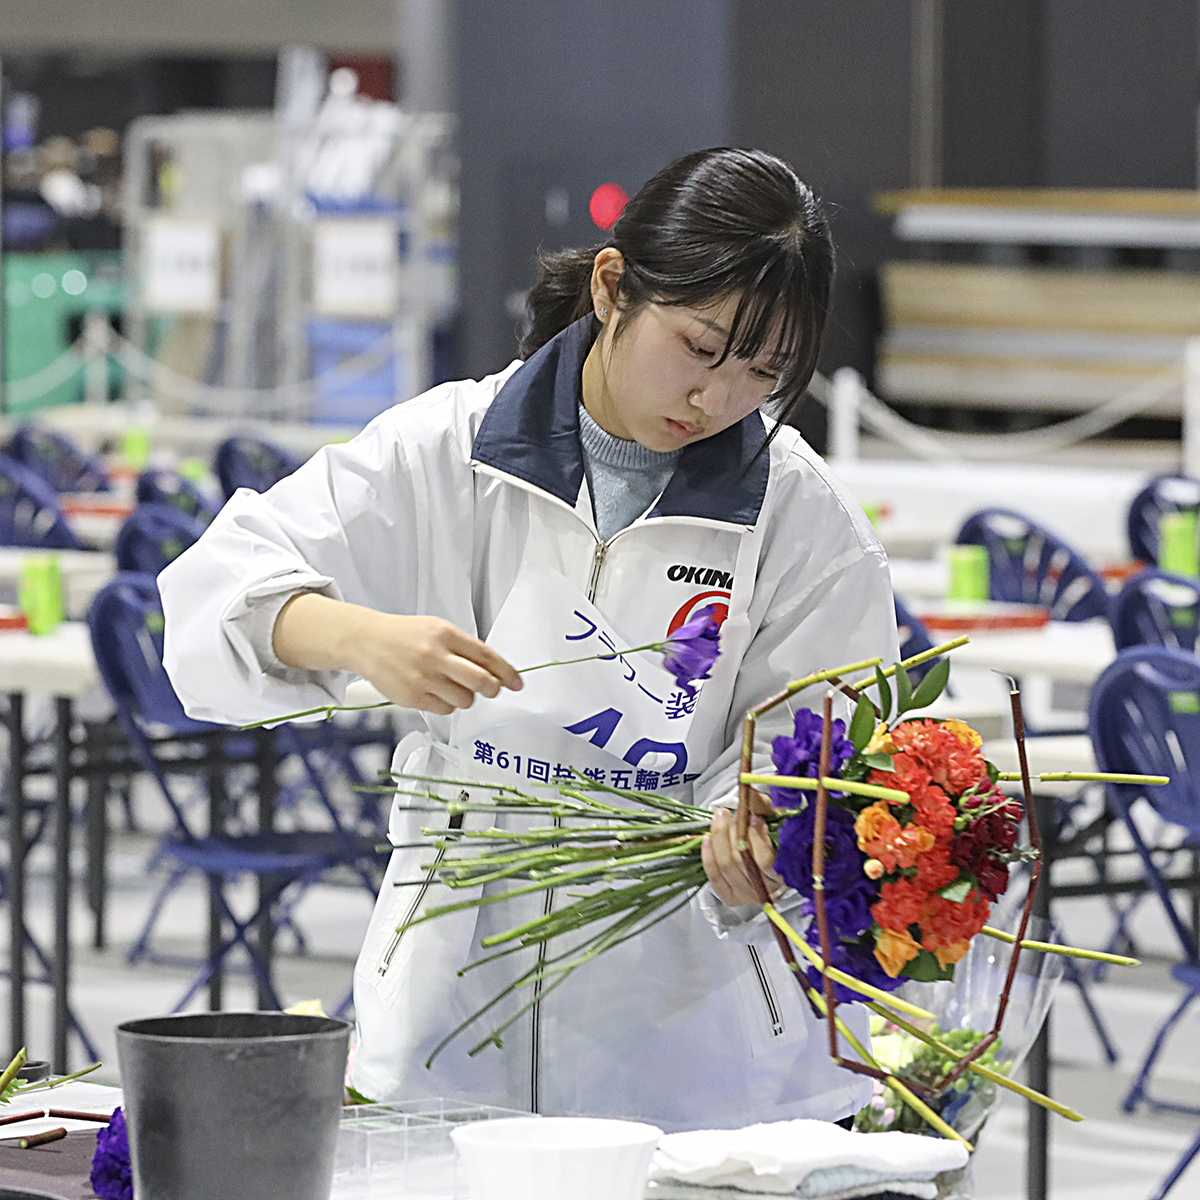 技能五輪全国大会「フラワー装飾」職種！ ポイント③ 優れた感性で花材に向き合い、丁寧かつスピーディーにイメージをかたちにします #WorldSkills #WorldSkillsJapan #技能五輪全国大会 #NationalSkills #フラワー装飾 #Floristry